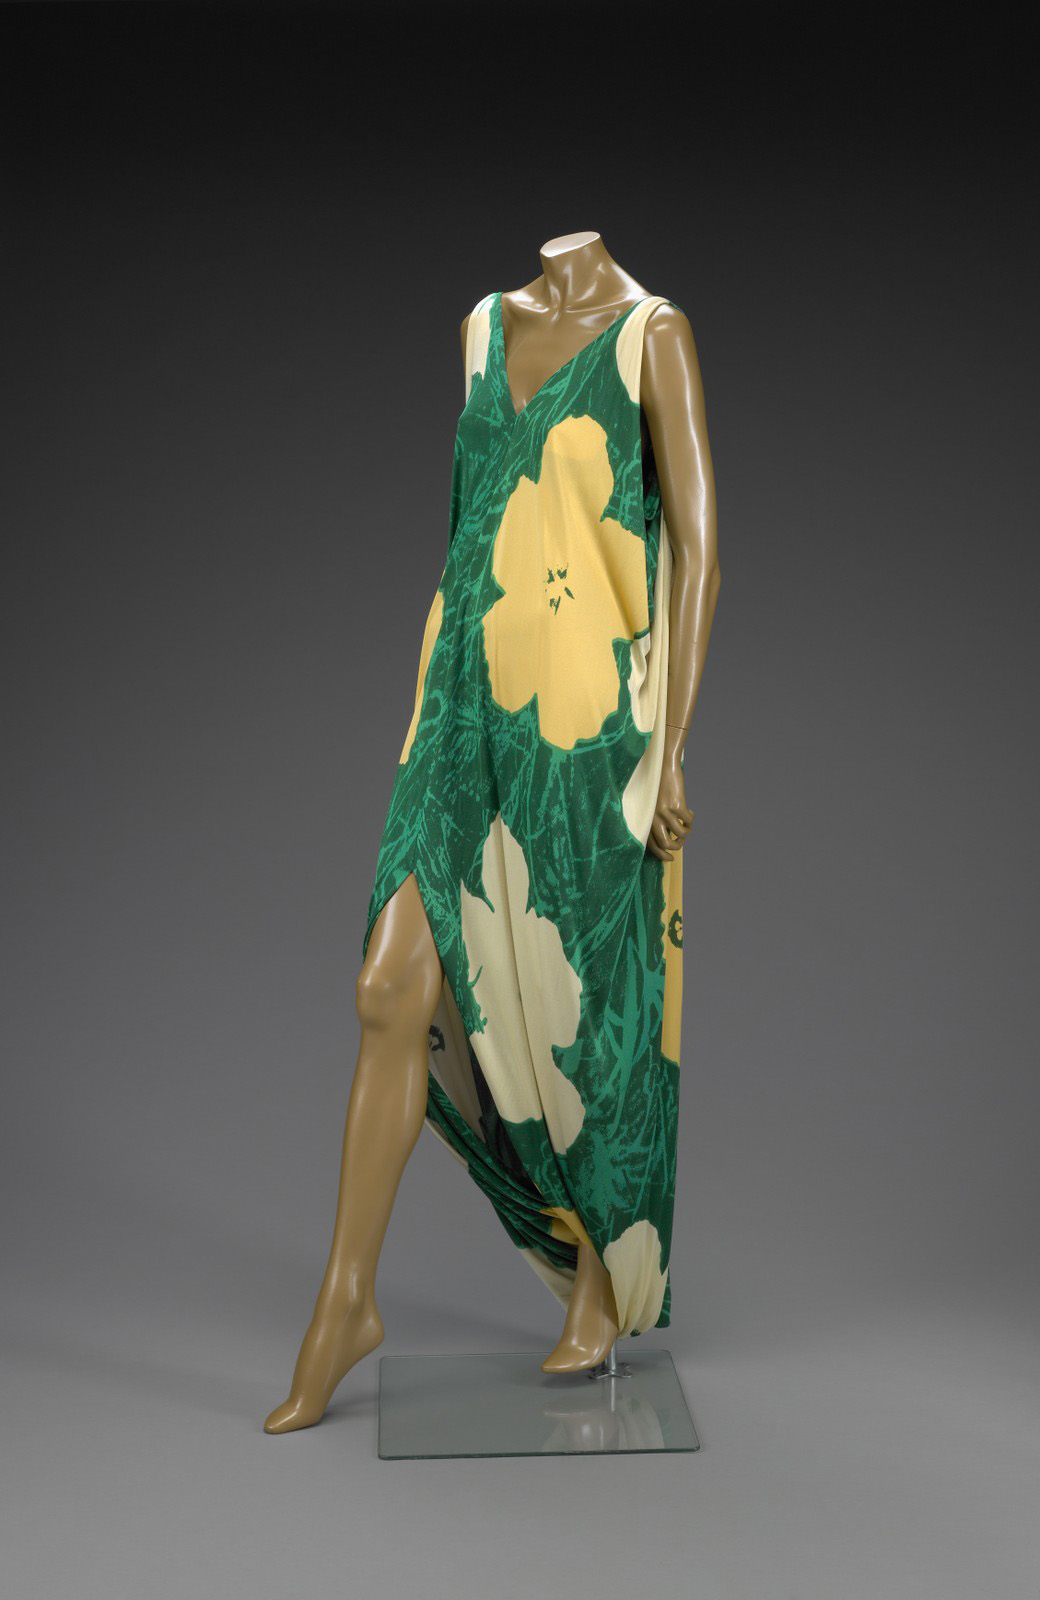 Halston silk dress, 1972, based on Warhol's flowers paintings, 1964